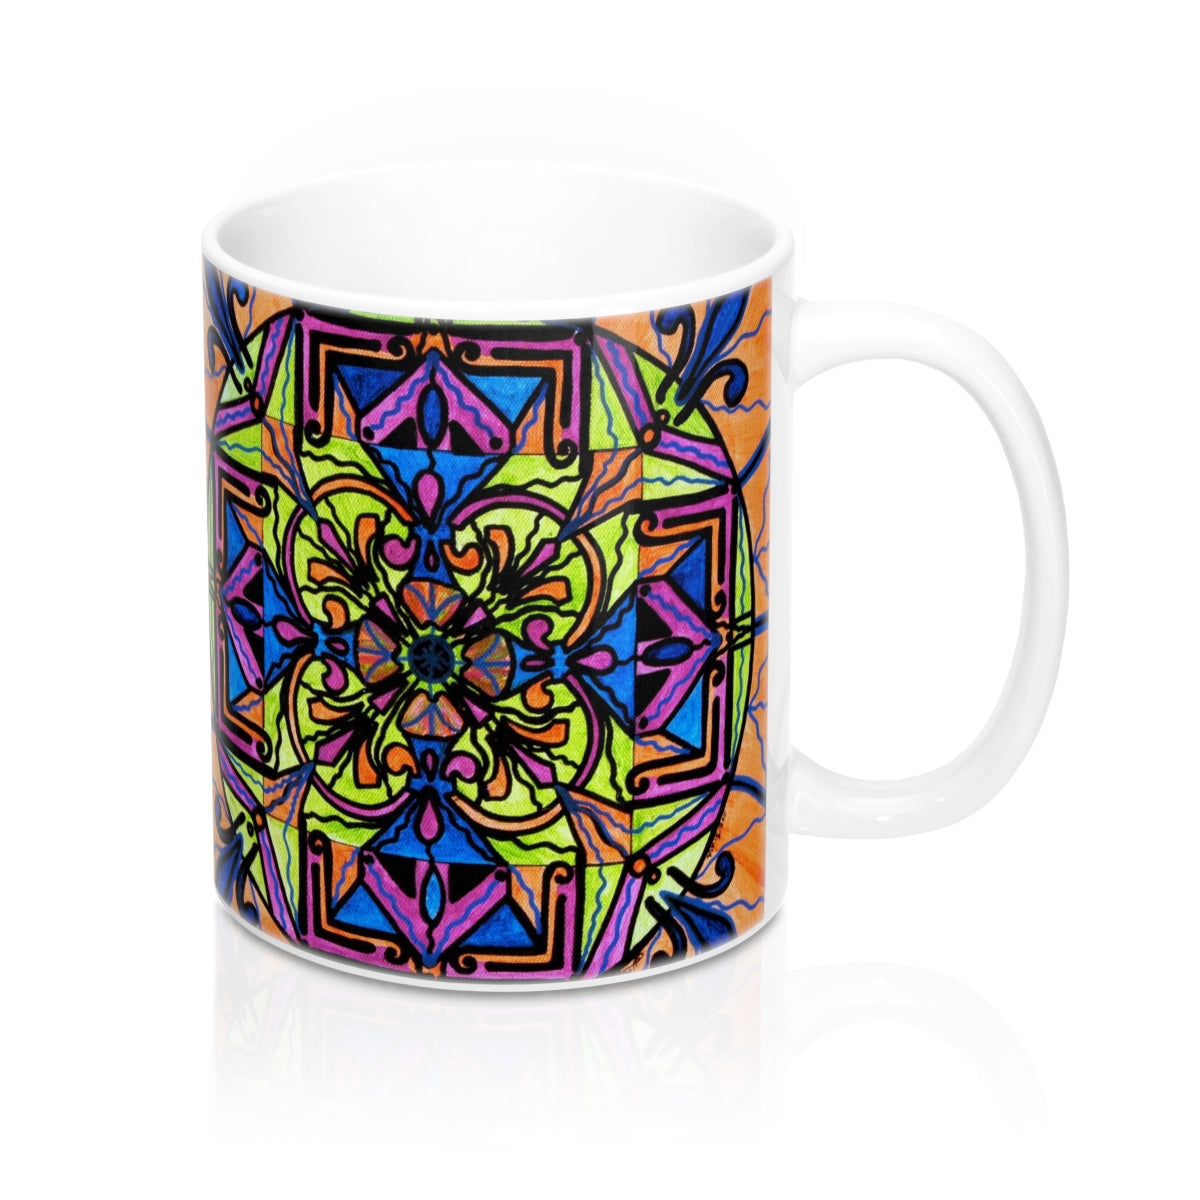 shop-authentic-uplift-mug-online-hot-sale_0.jpg